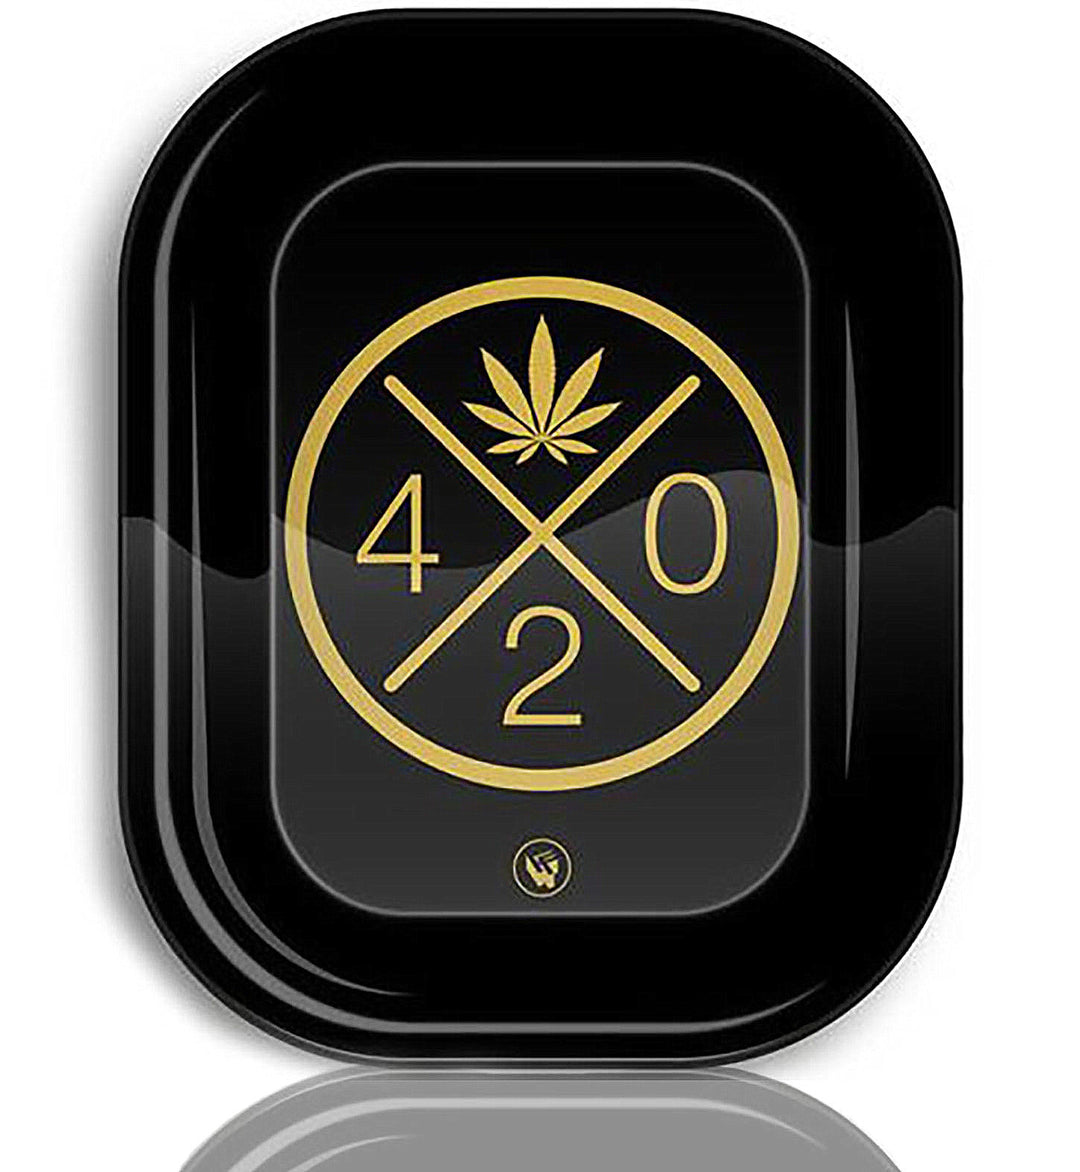 Rolling Tray Drehunterlage Bauunterlage Dreh-Tablett Mischschale 420 Leaf Cannabis Blatt gold schwarz